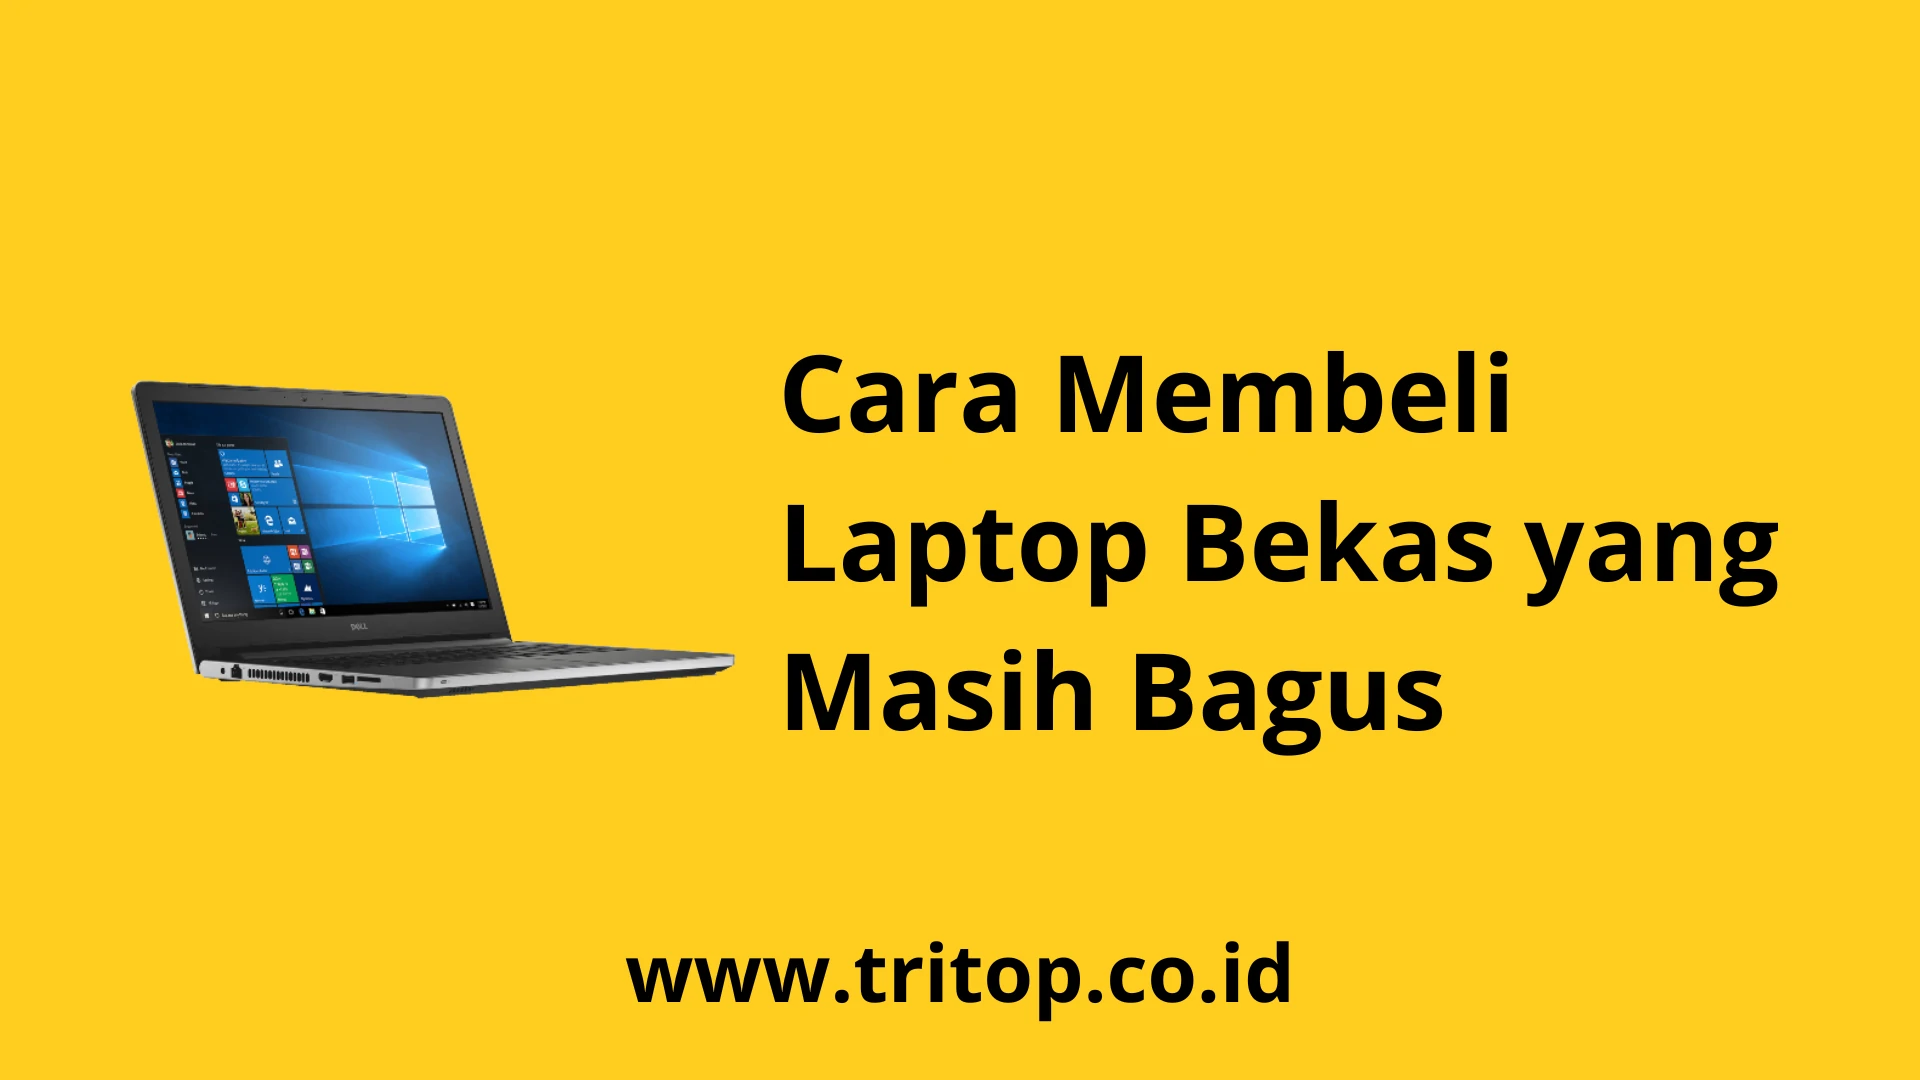 Cara Membeli Laptop Bekas yang Masih Bagus www.tritop.co.id